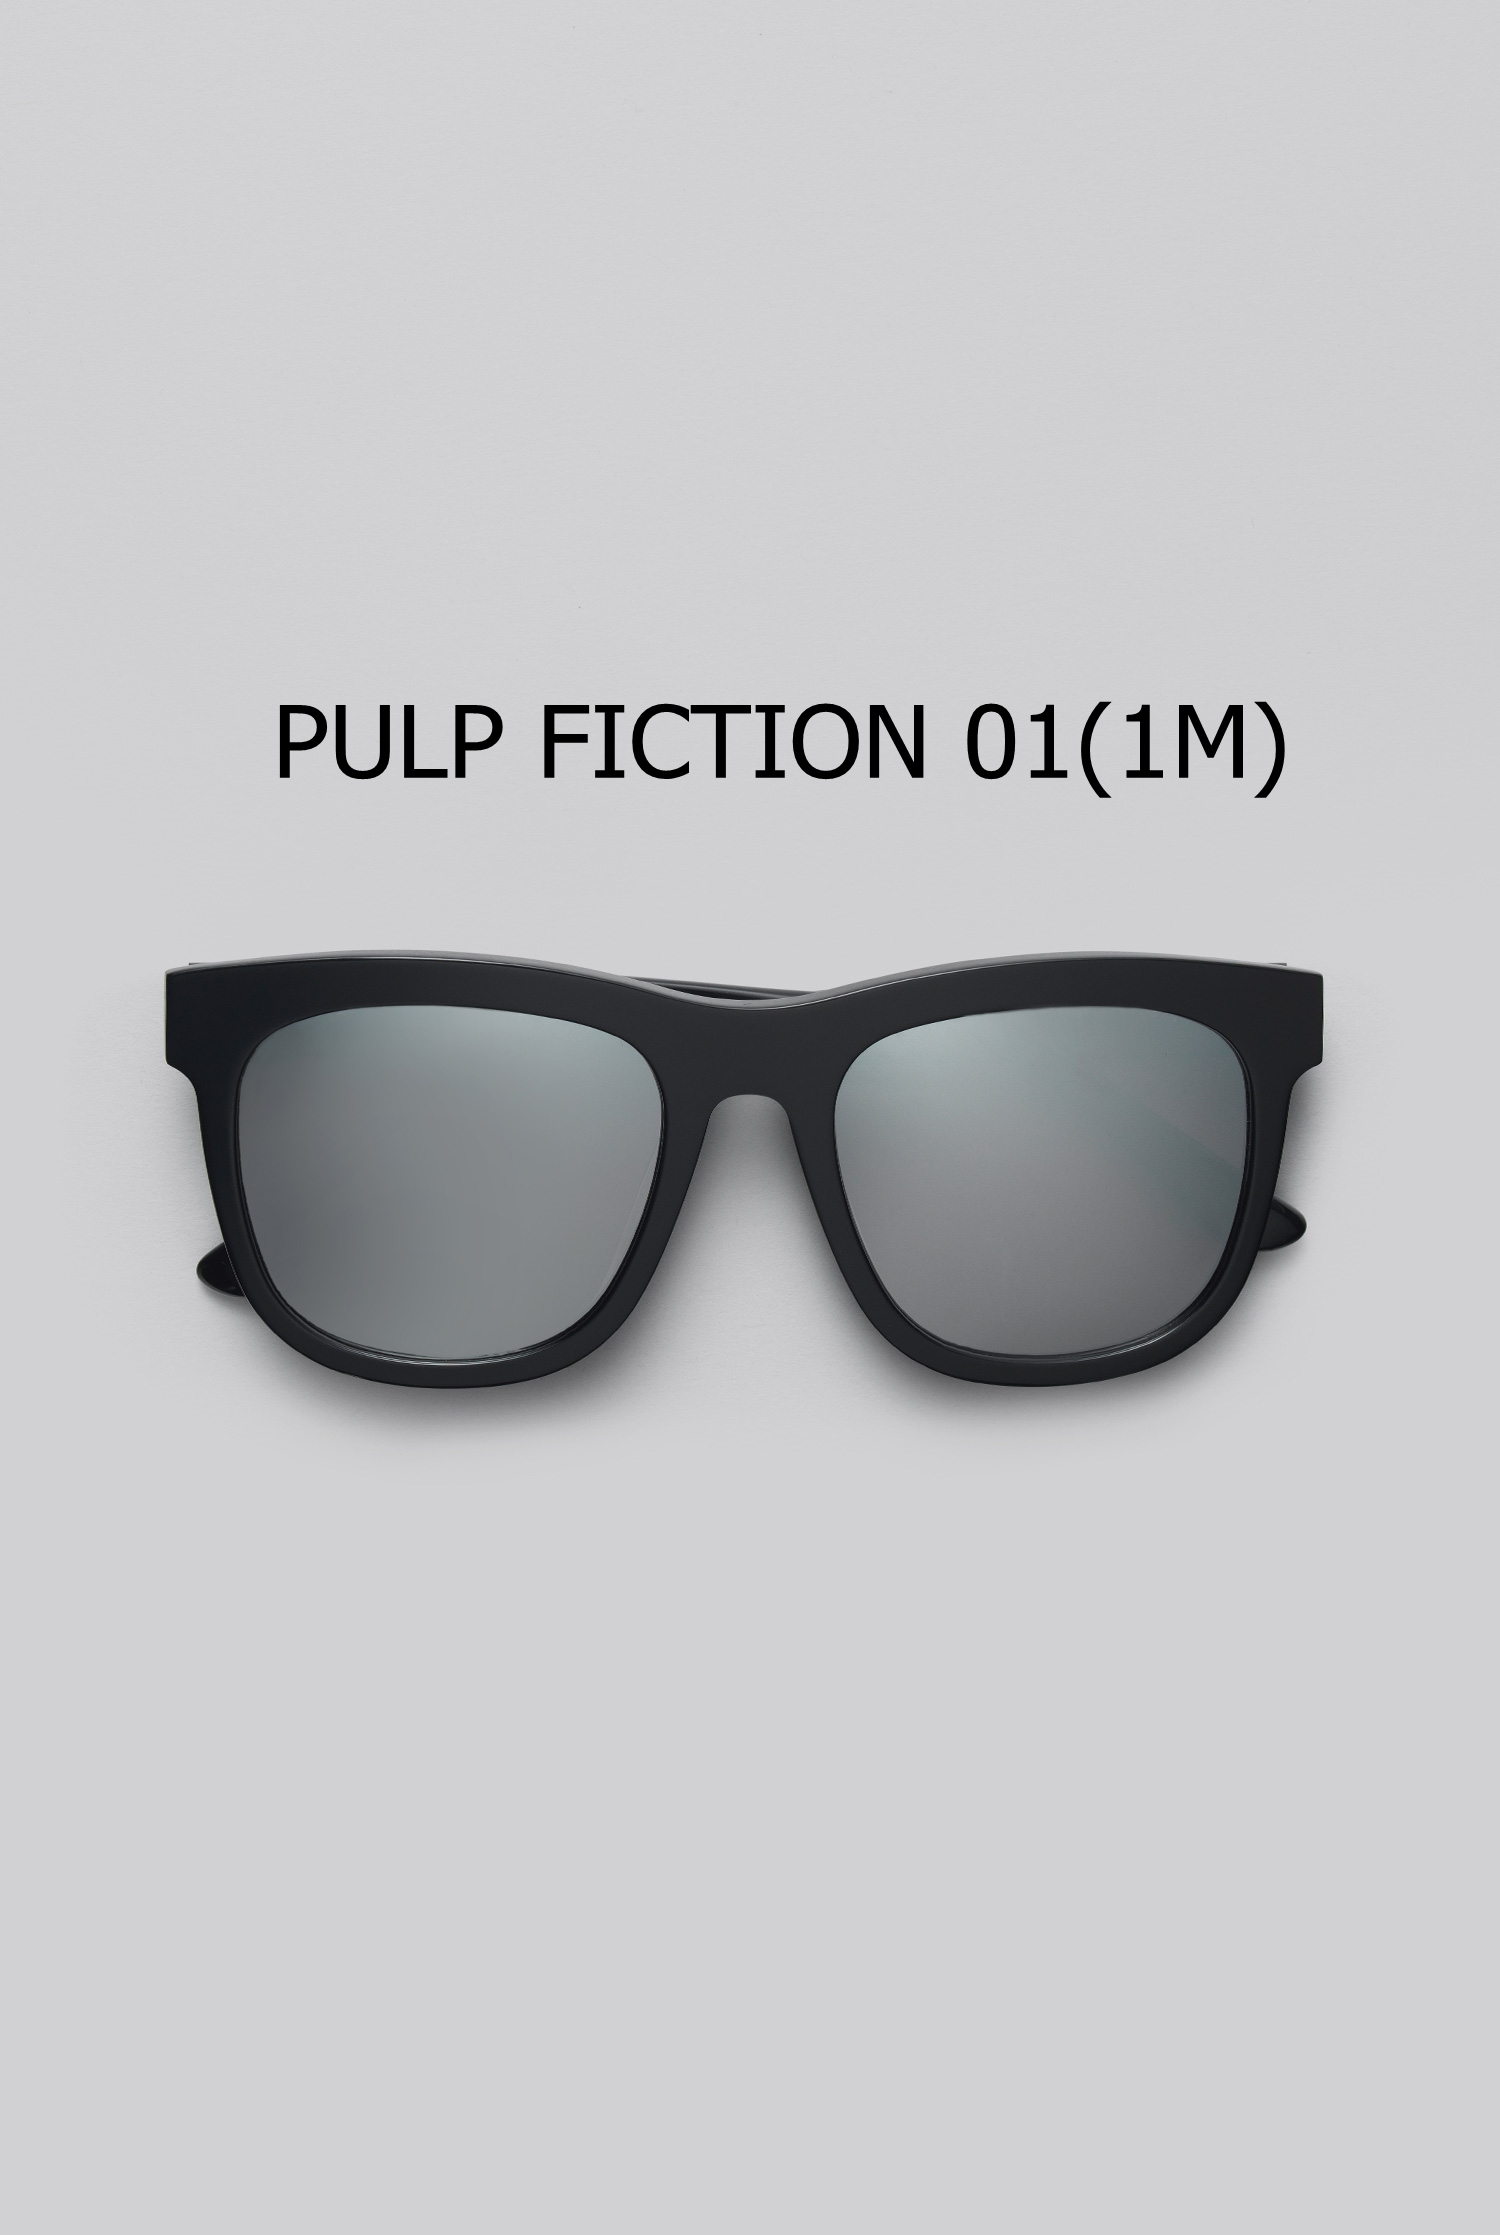 PULP FICTION 01(1M) 